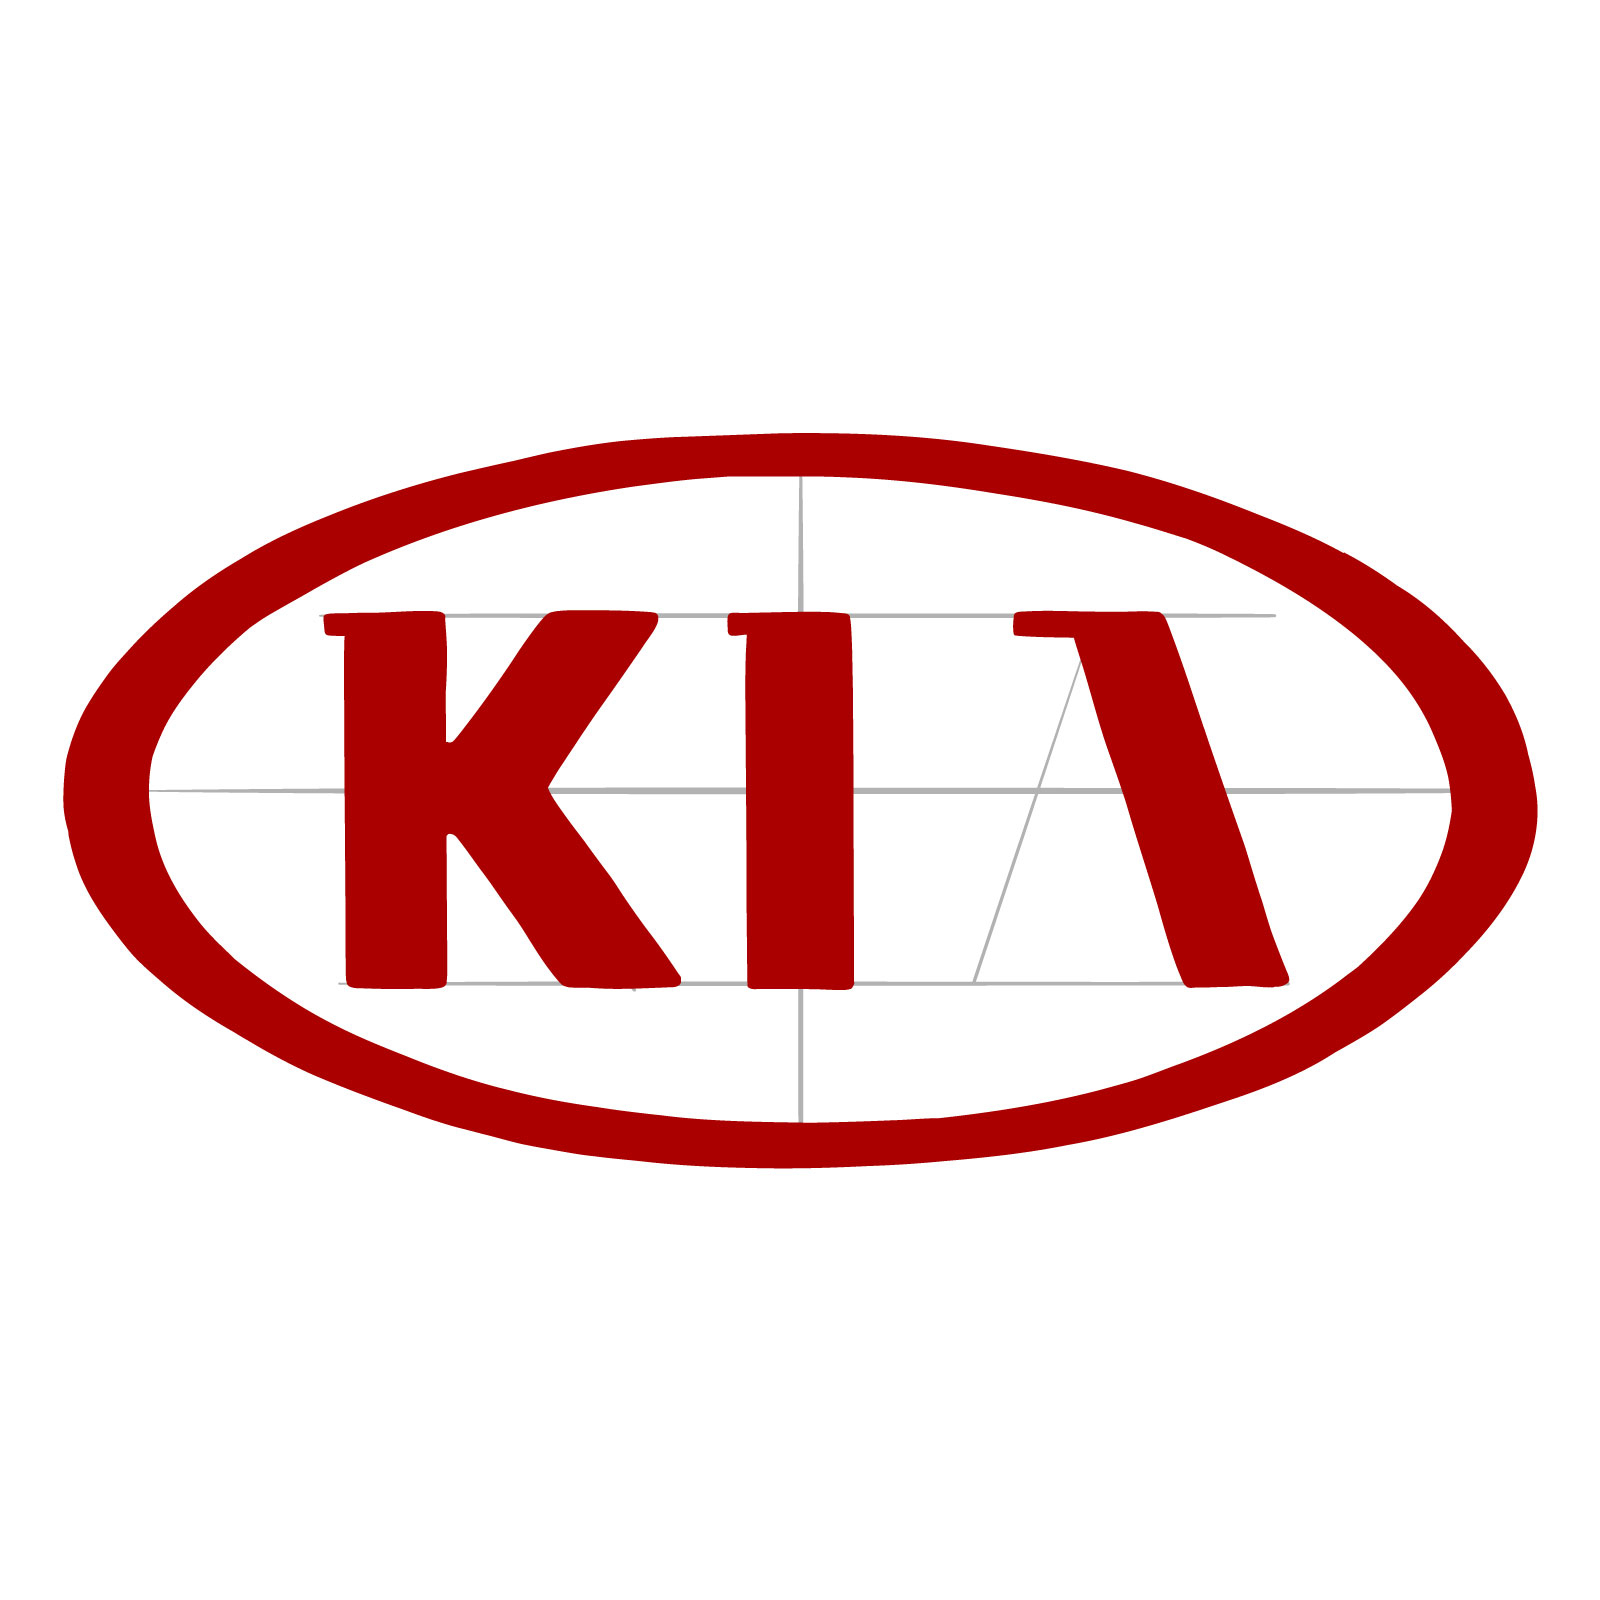 How to draw the KIA logo - step 08